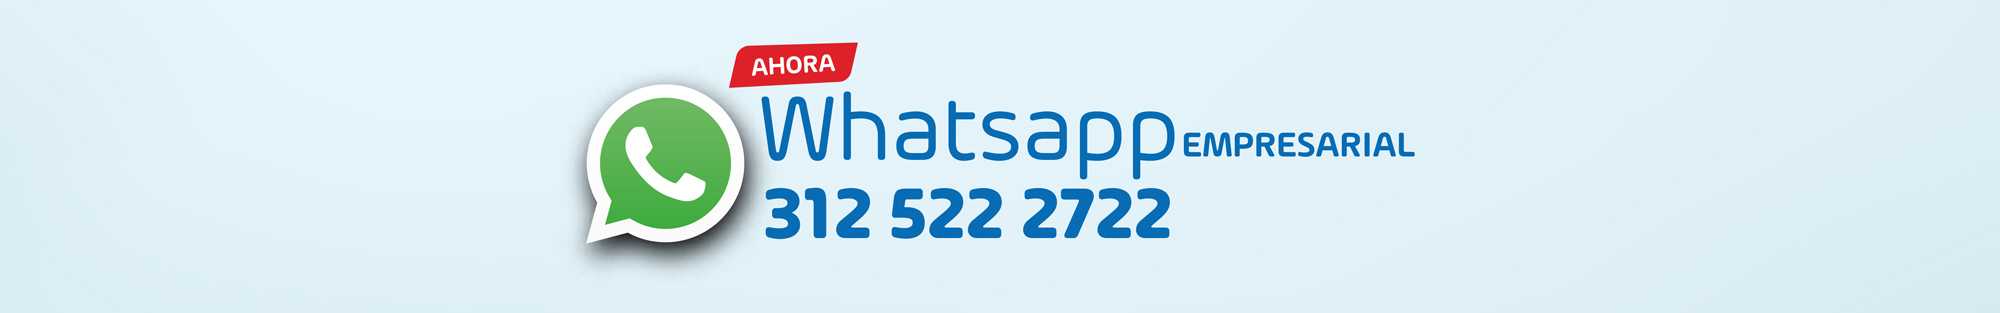 Whatsapp-Empresarial-312-522-2722.jpg